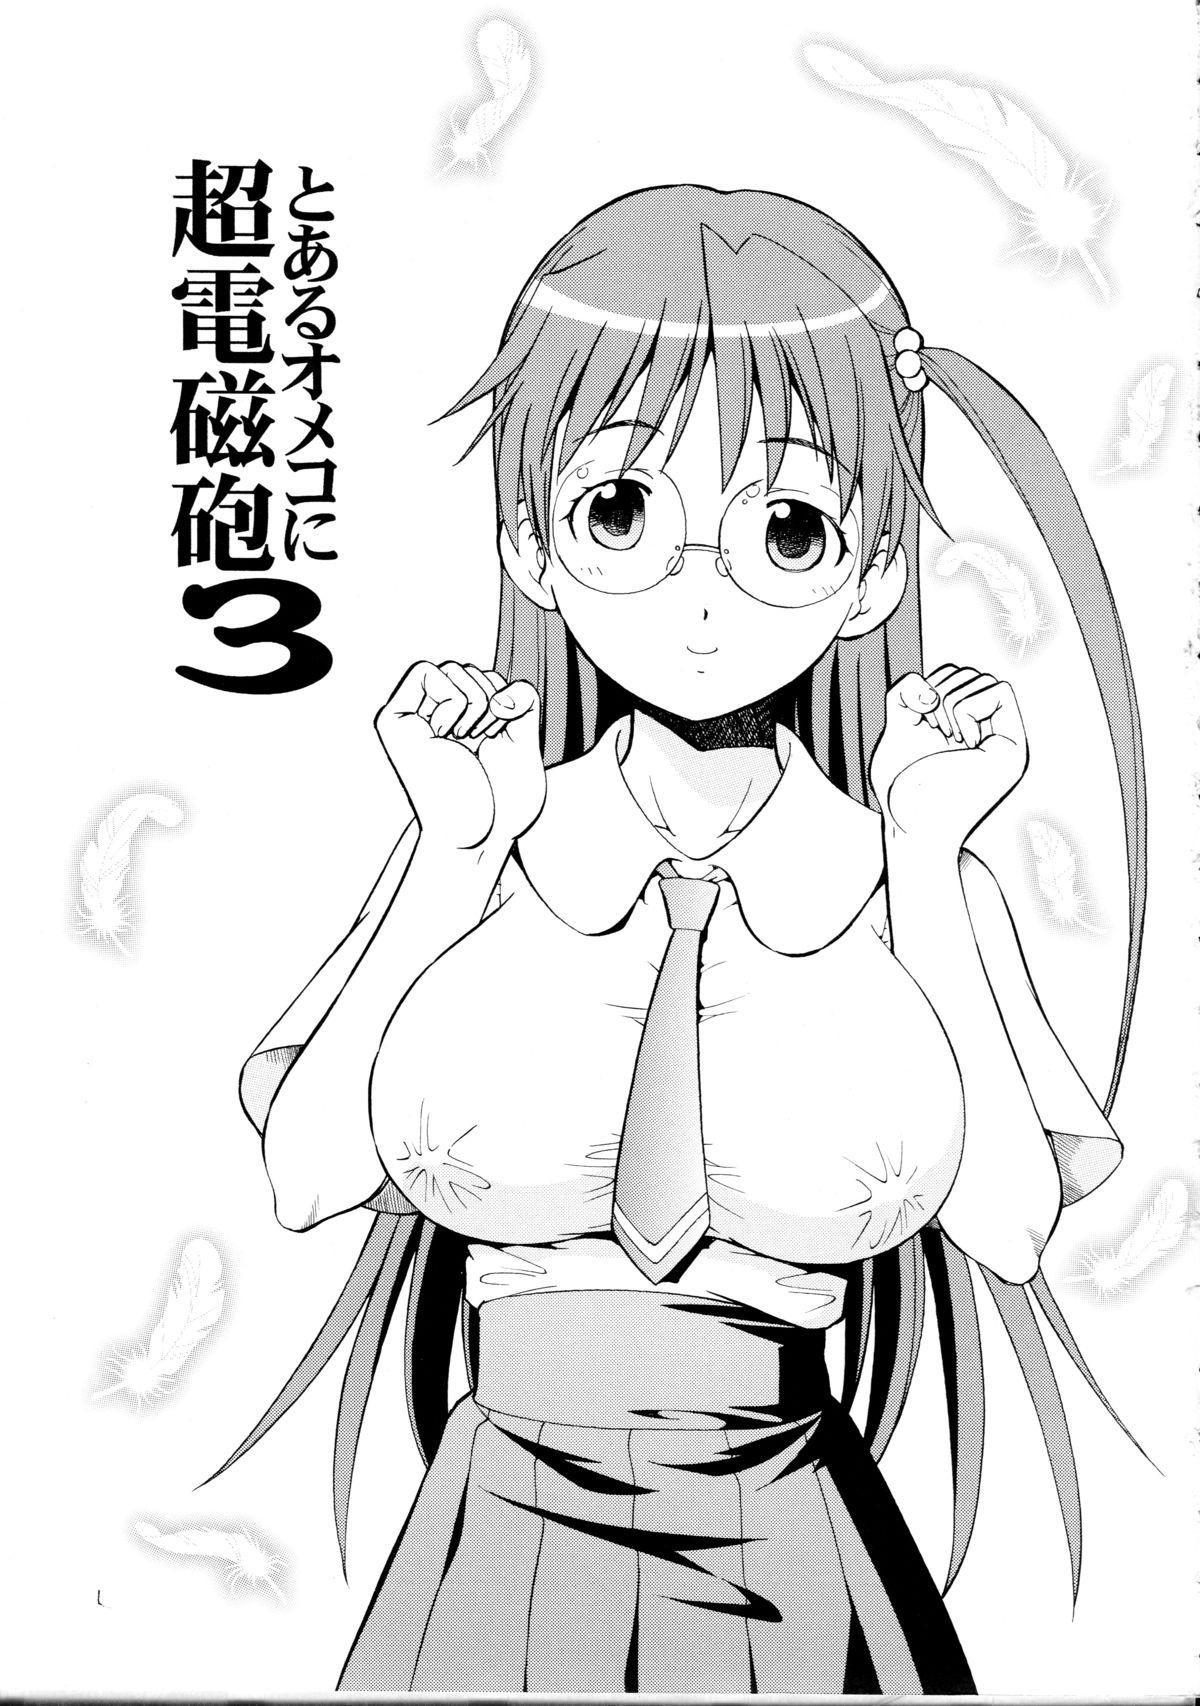 Horny Slut Toaru Omeko ni Railgun 3 - Toaru kagaku no railgun Toaru majutsu no index Storyline - Page 3